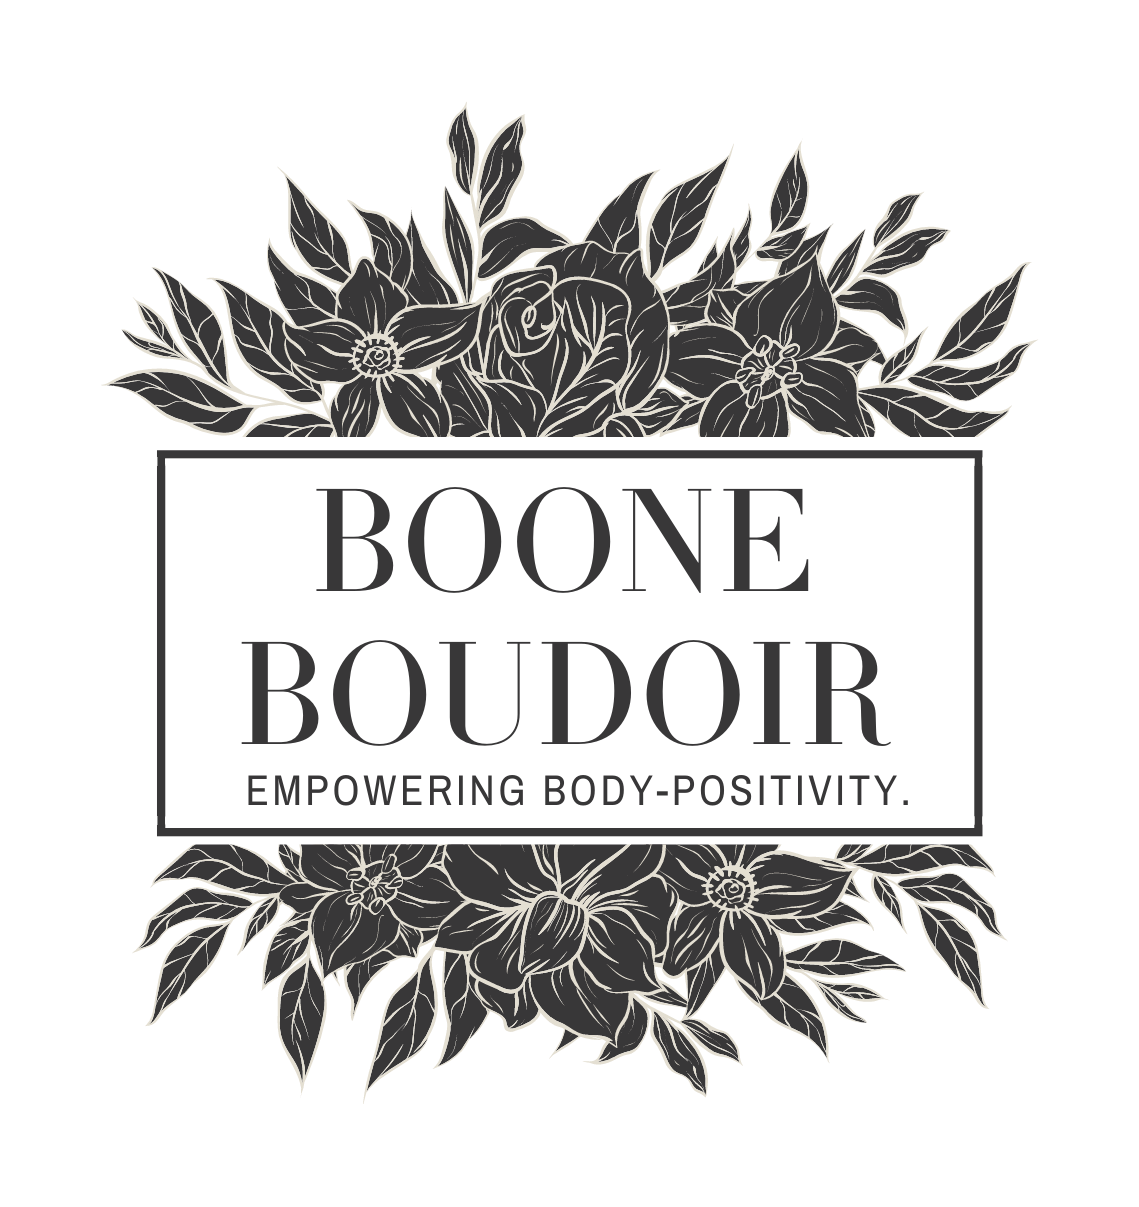 Boone Boudoir